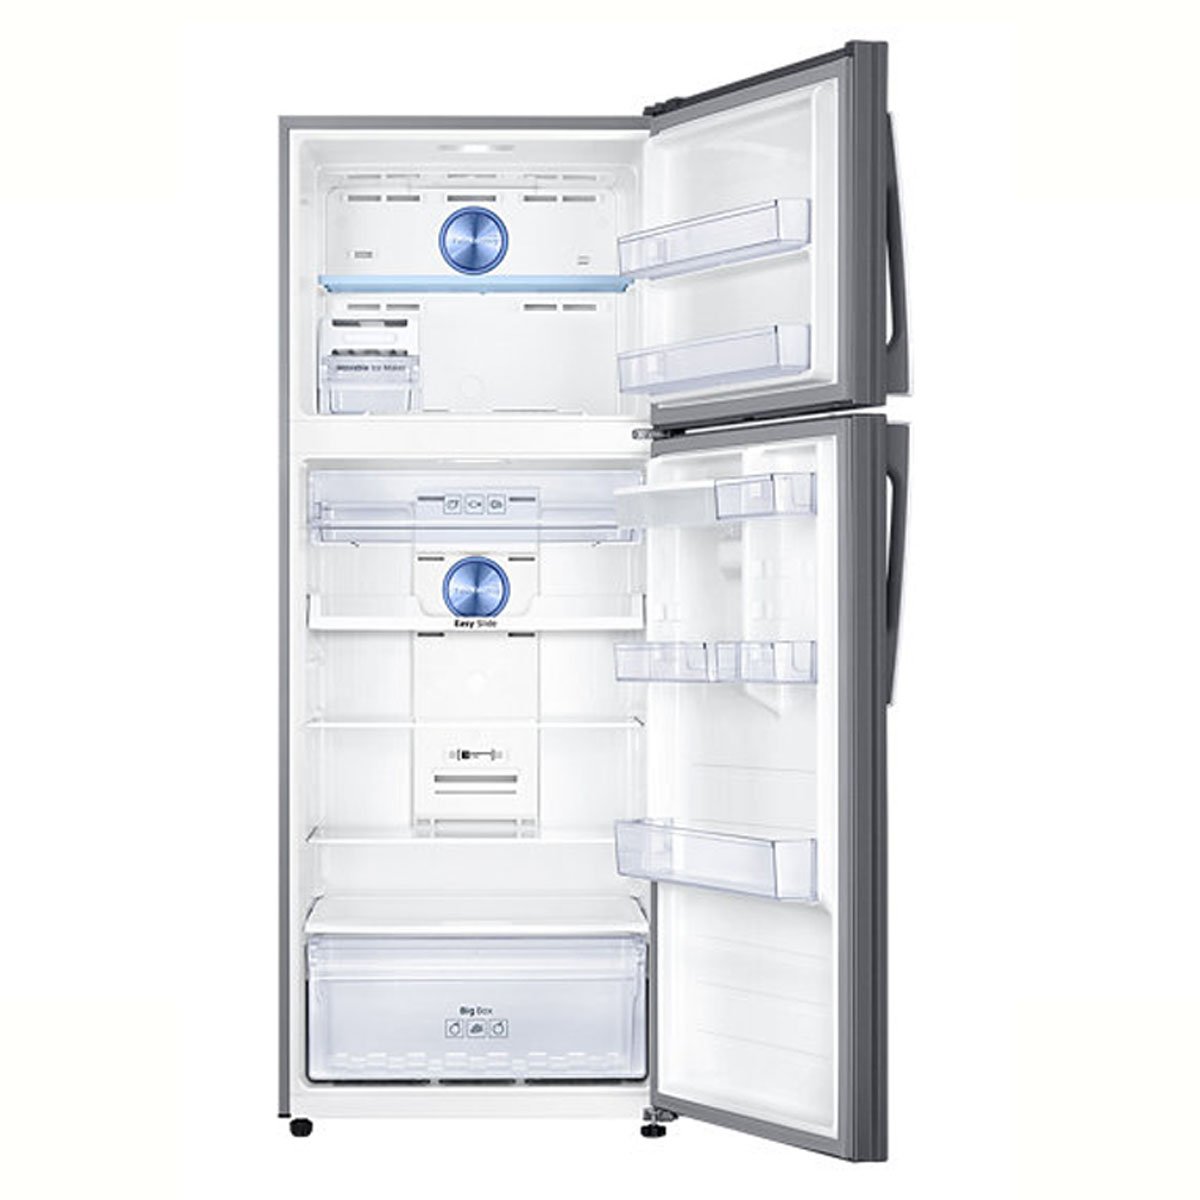 Refrigerador Samsung Top Mount 16 Pies Easy Clean Steel